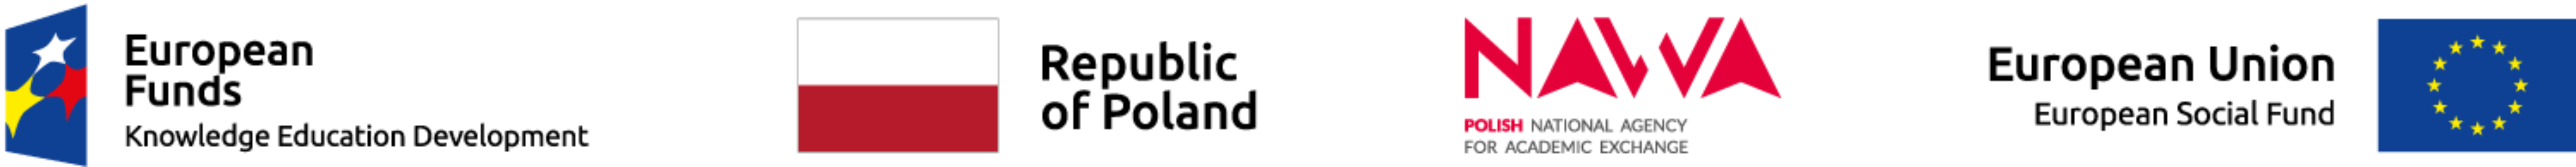 European Funds Logo; Poland's flag; NAWA Logo; EU's flag